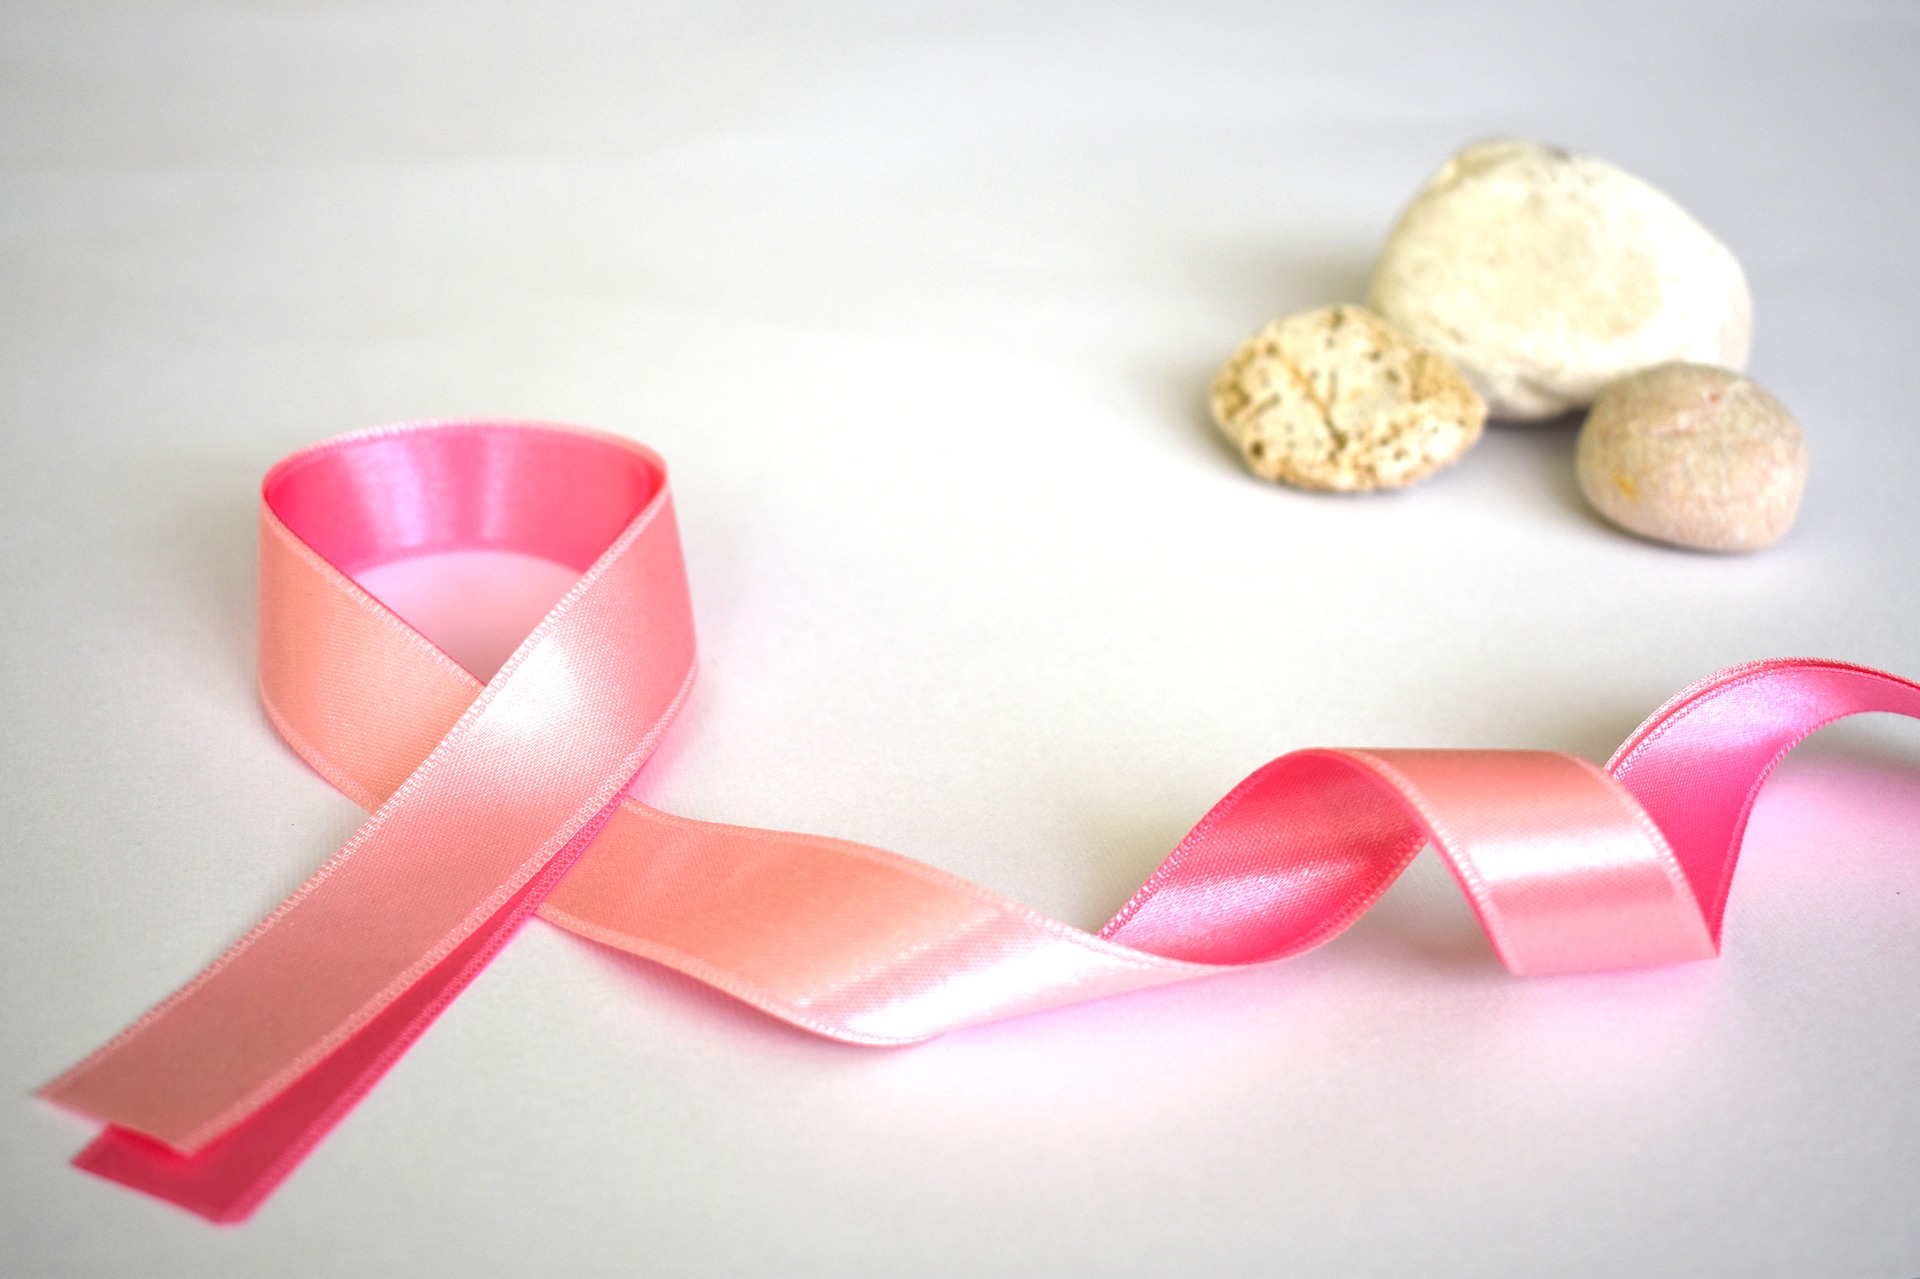 Bezpłatne badania mammograficzne w ramach programu profilaktyki raka piersi 1